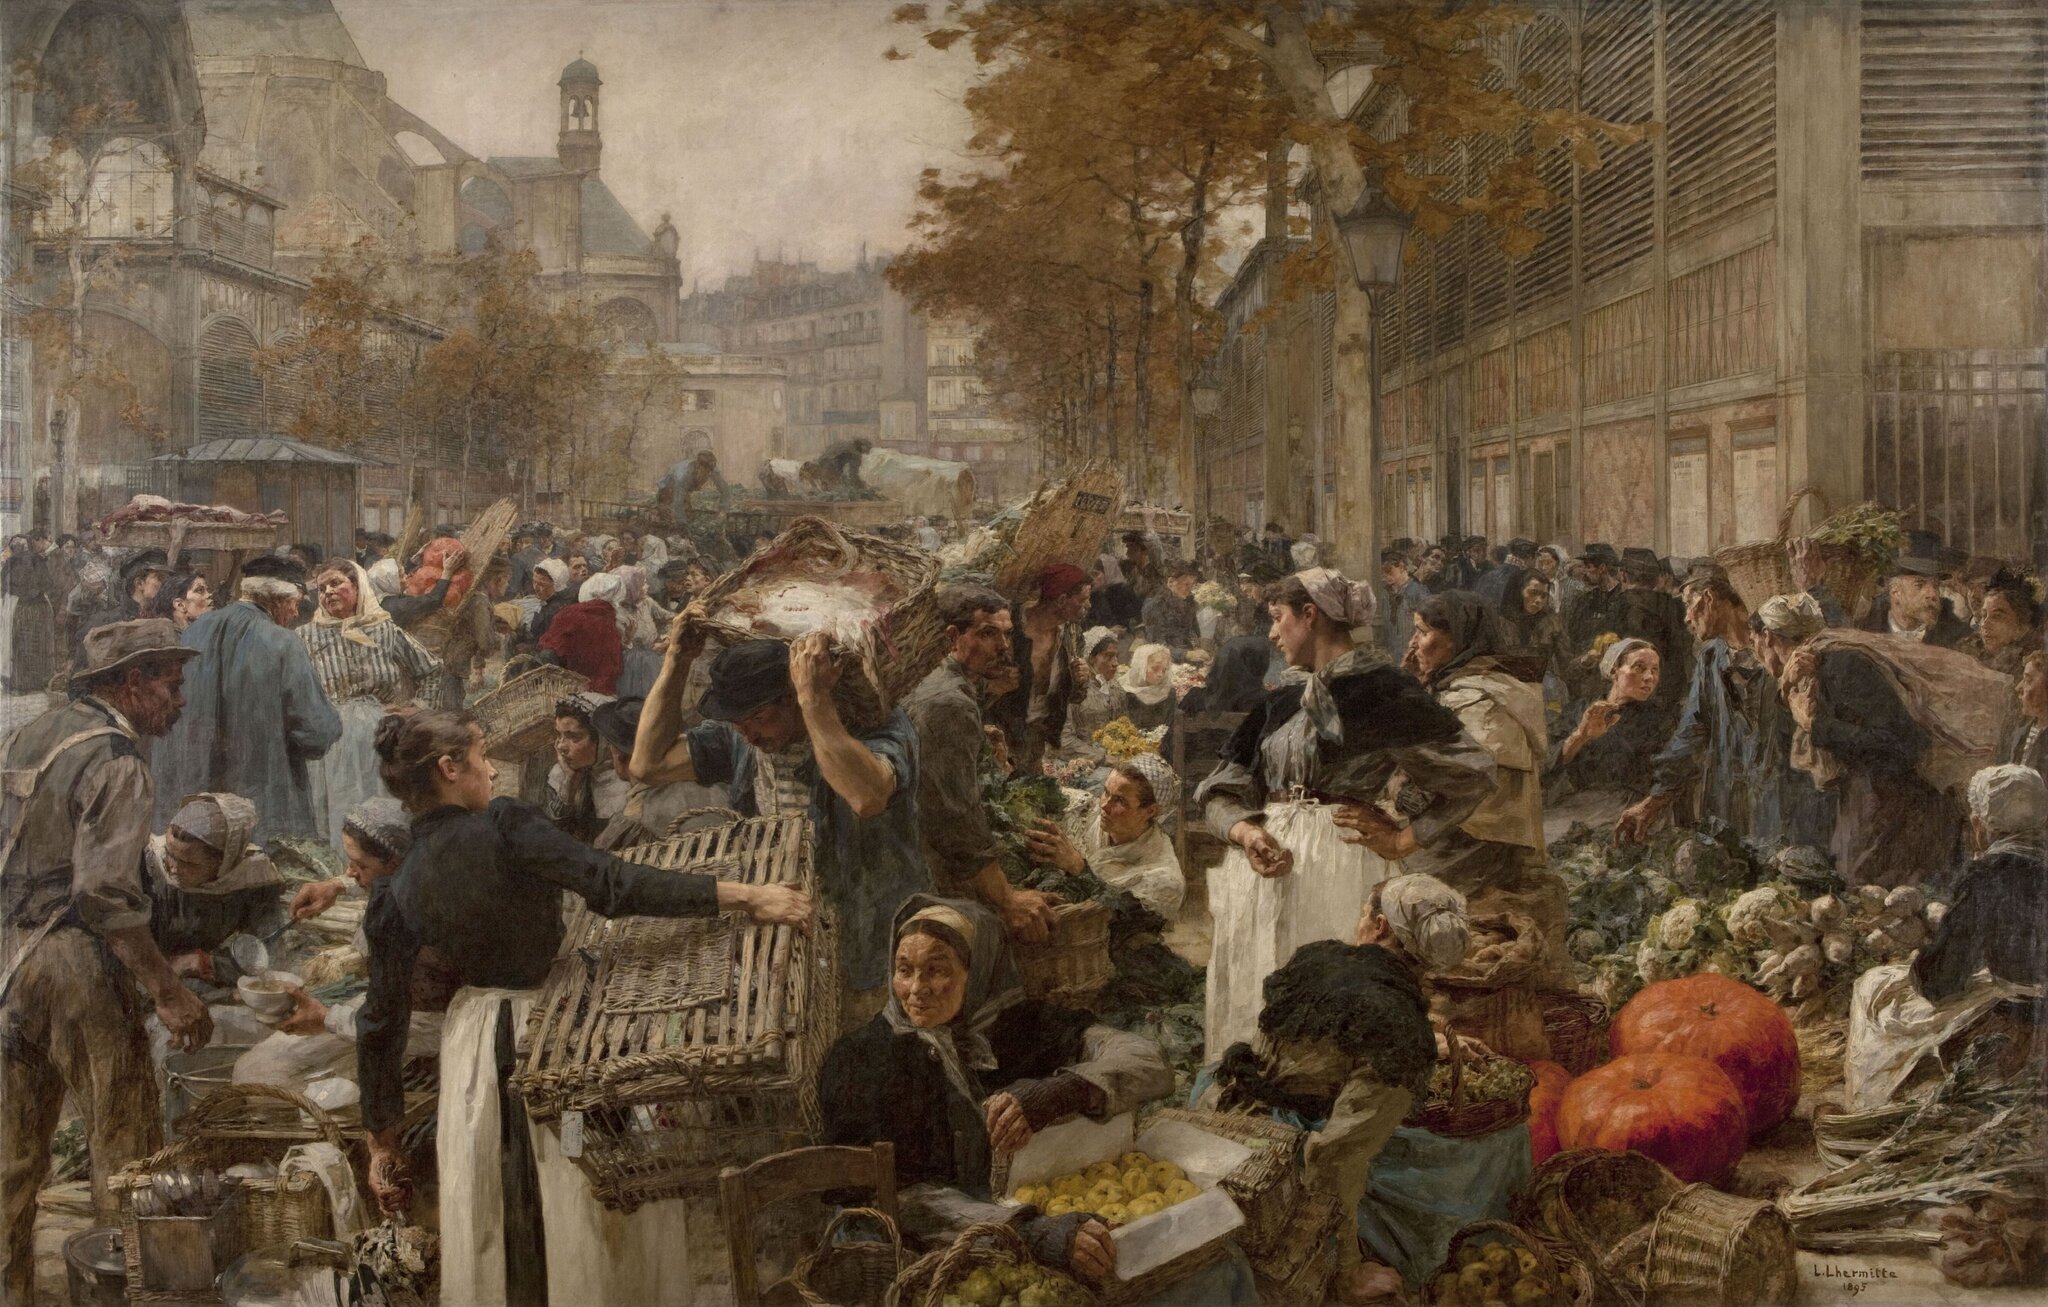 Les Halles Targ w Paryżu w drugiej połowie XIX wieku Źródło: Léon Lhermitte (1844–1925; czyt.: leon lermit; francuski malarz), Les Halles, domena publiczna.